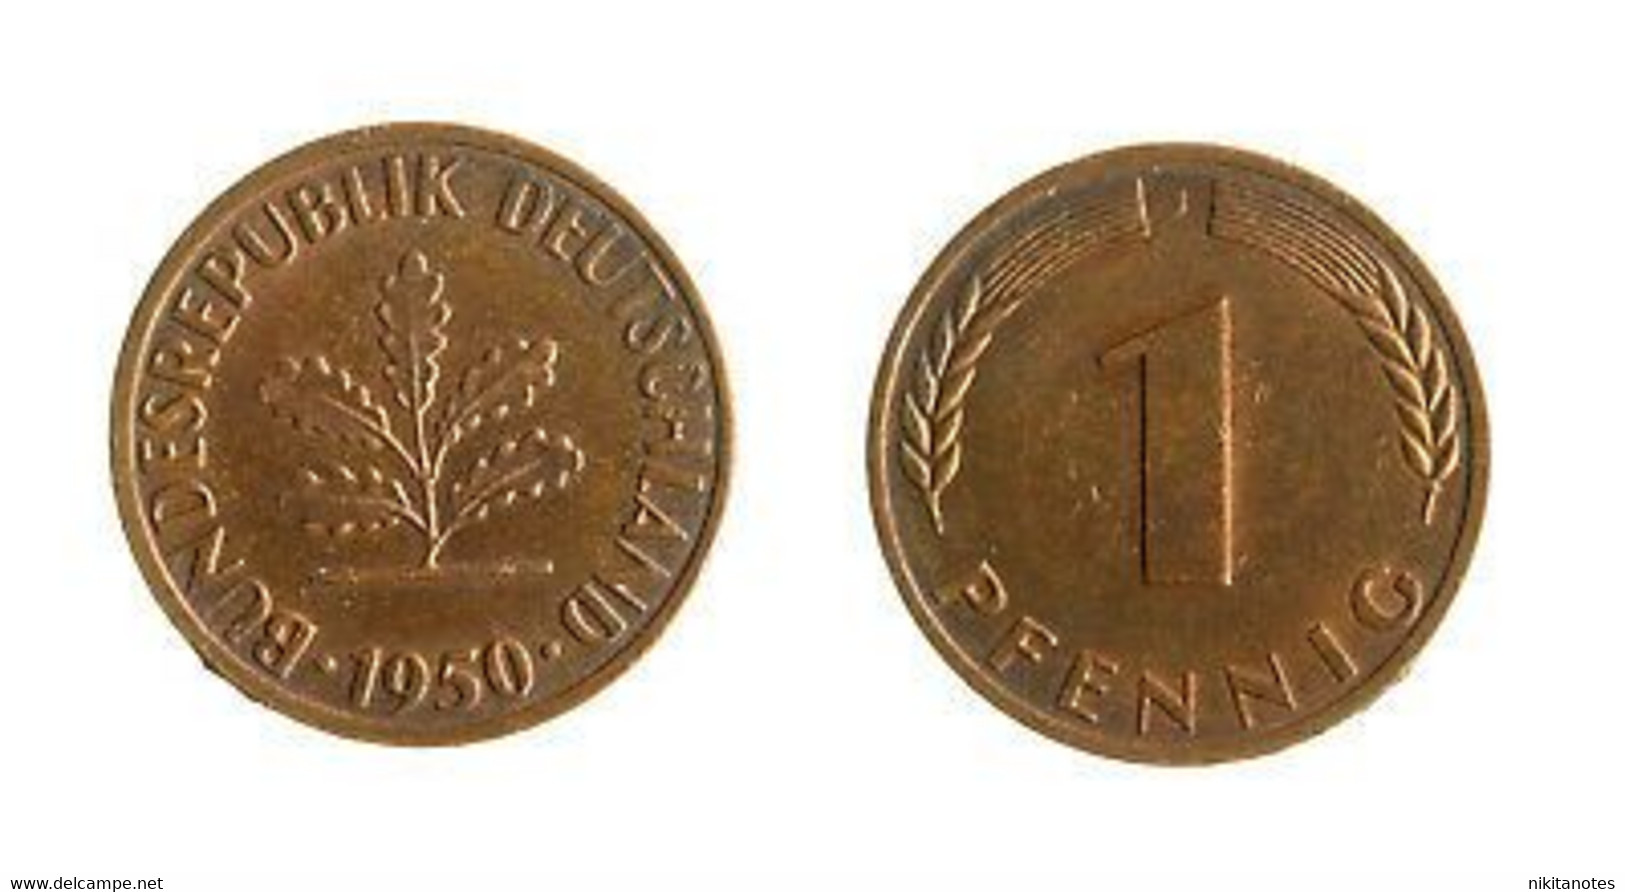 GERMANIA - DEUTSCHLAND - MONETA DA 1 PFENNIG - 1950 - 1 Reichspfennig